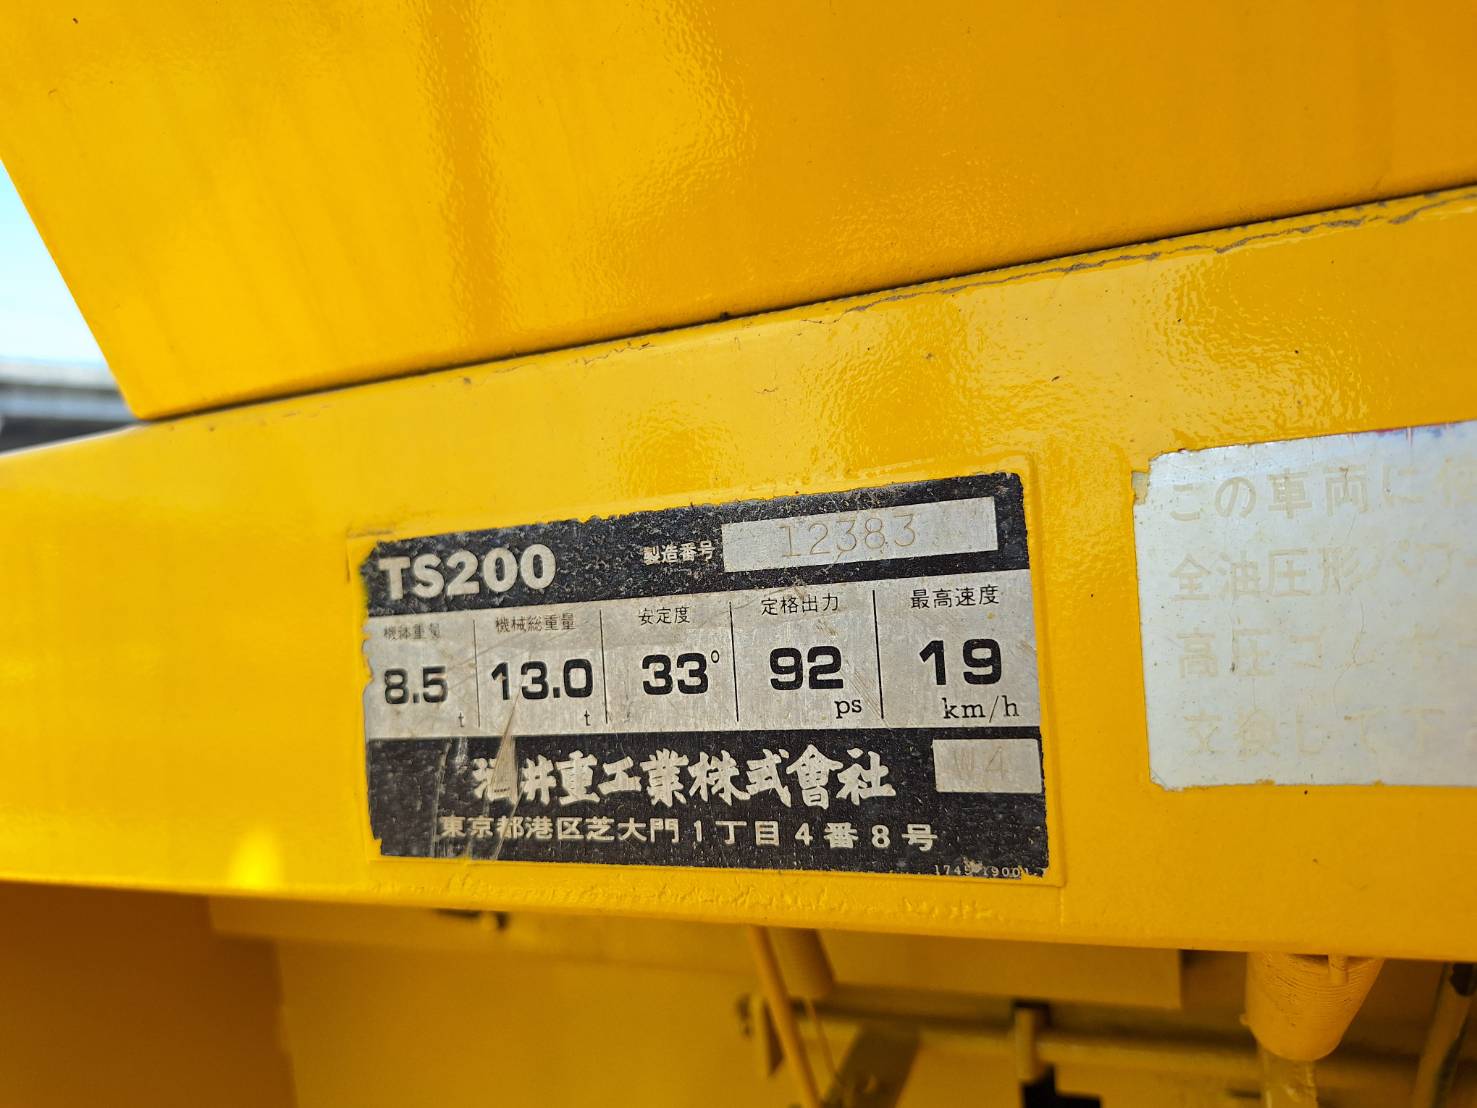 รถบดล้อยาง TS200-12383